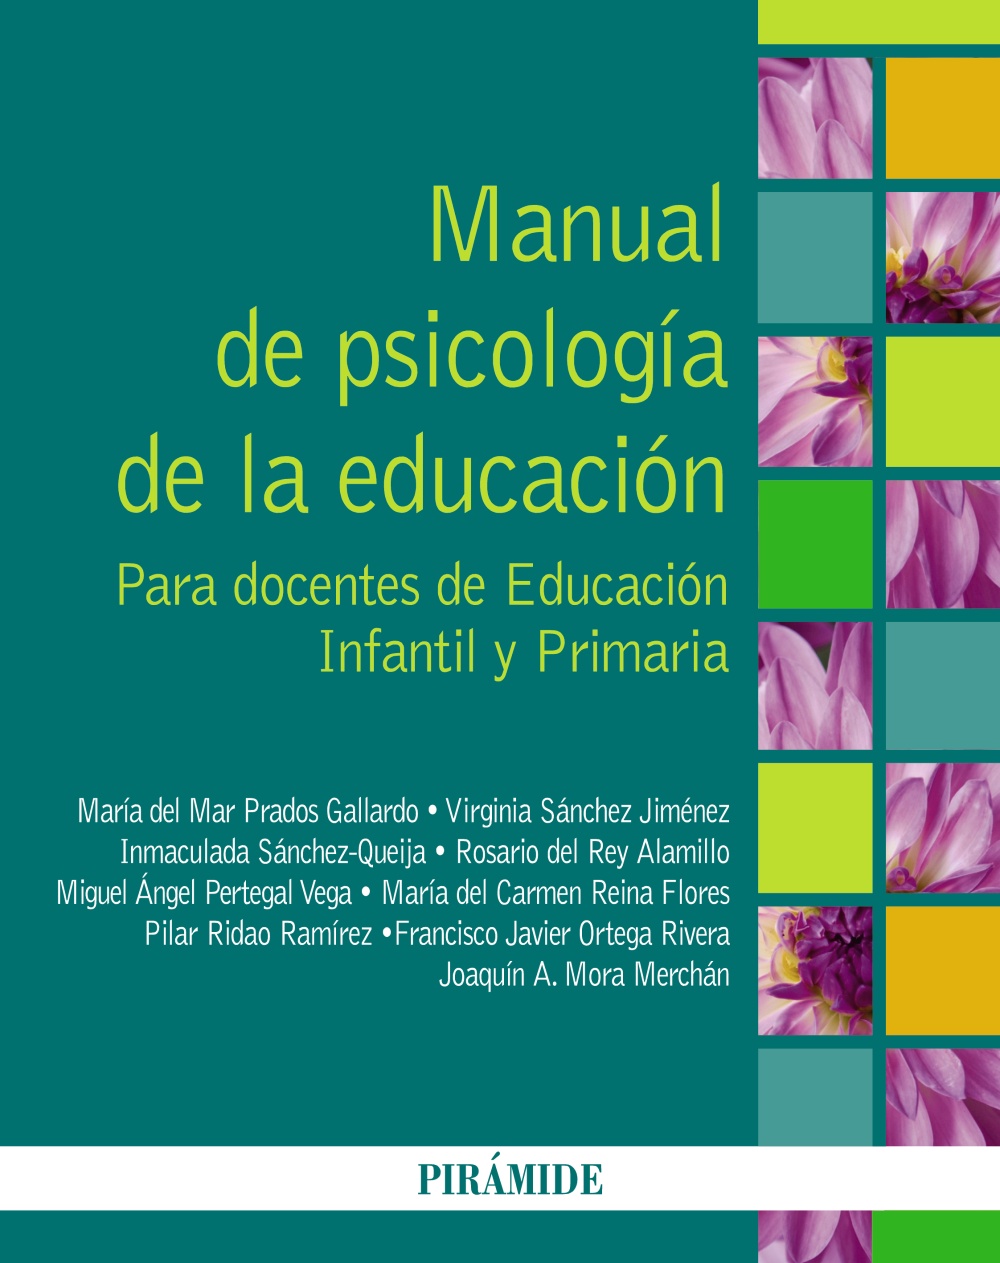 Manual de psicología de la educación: Para docentes de educación infantil y primaria